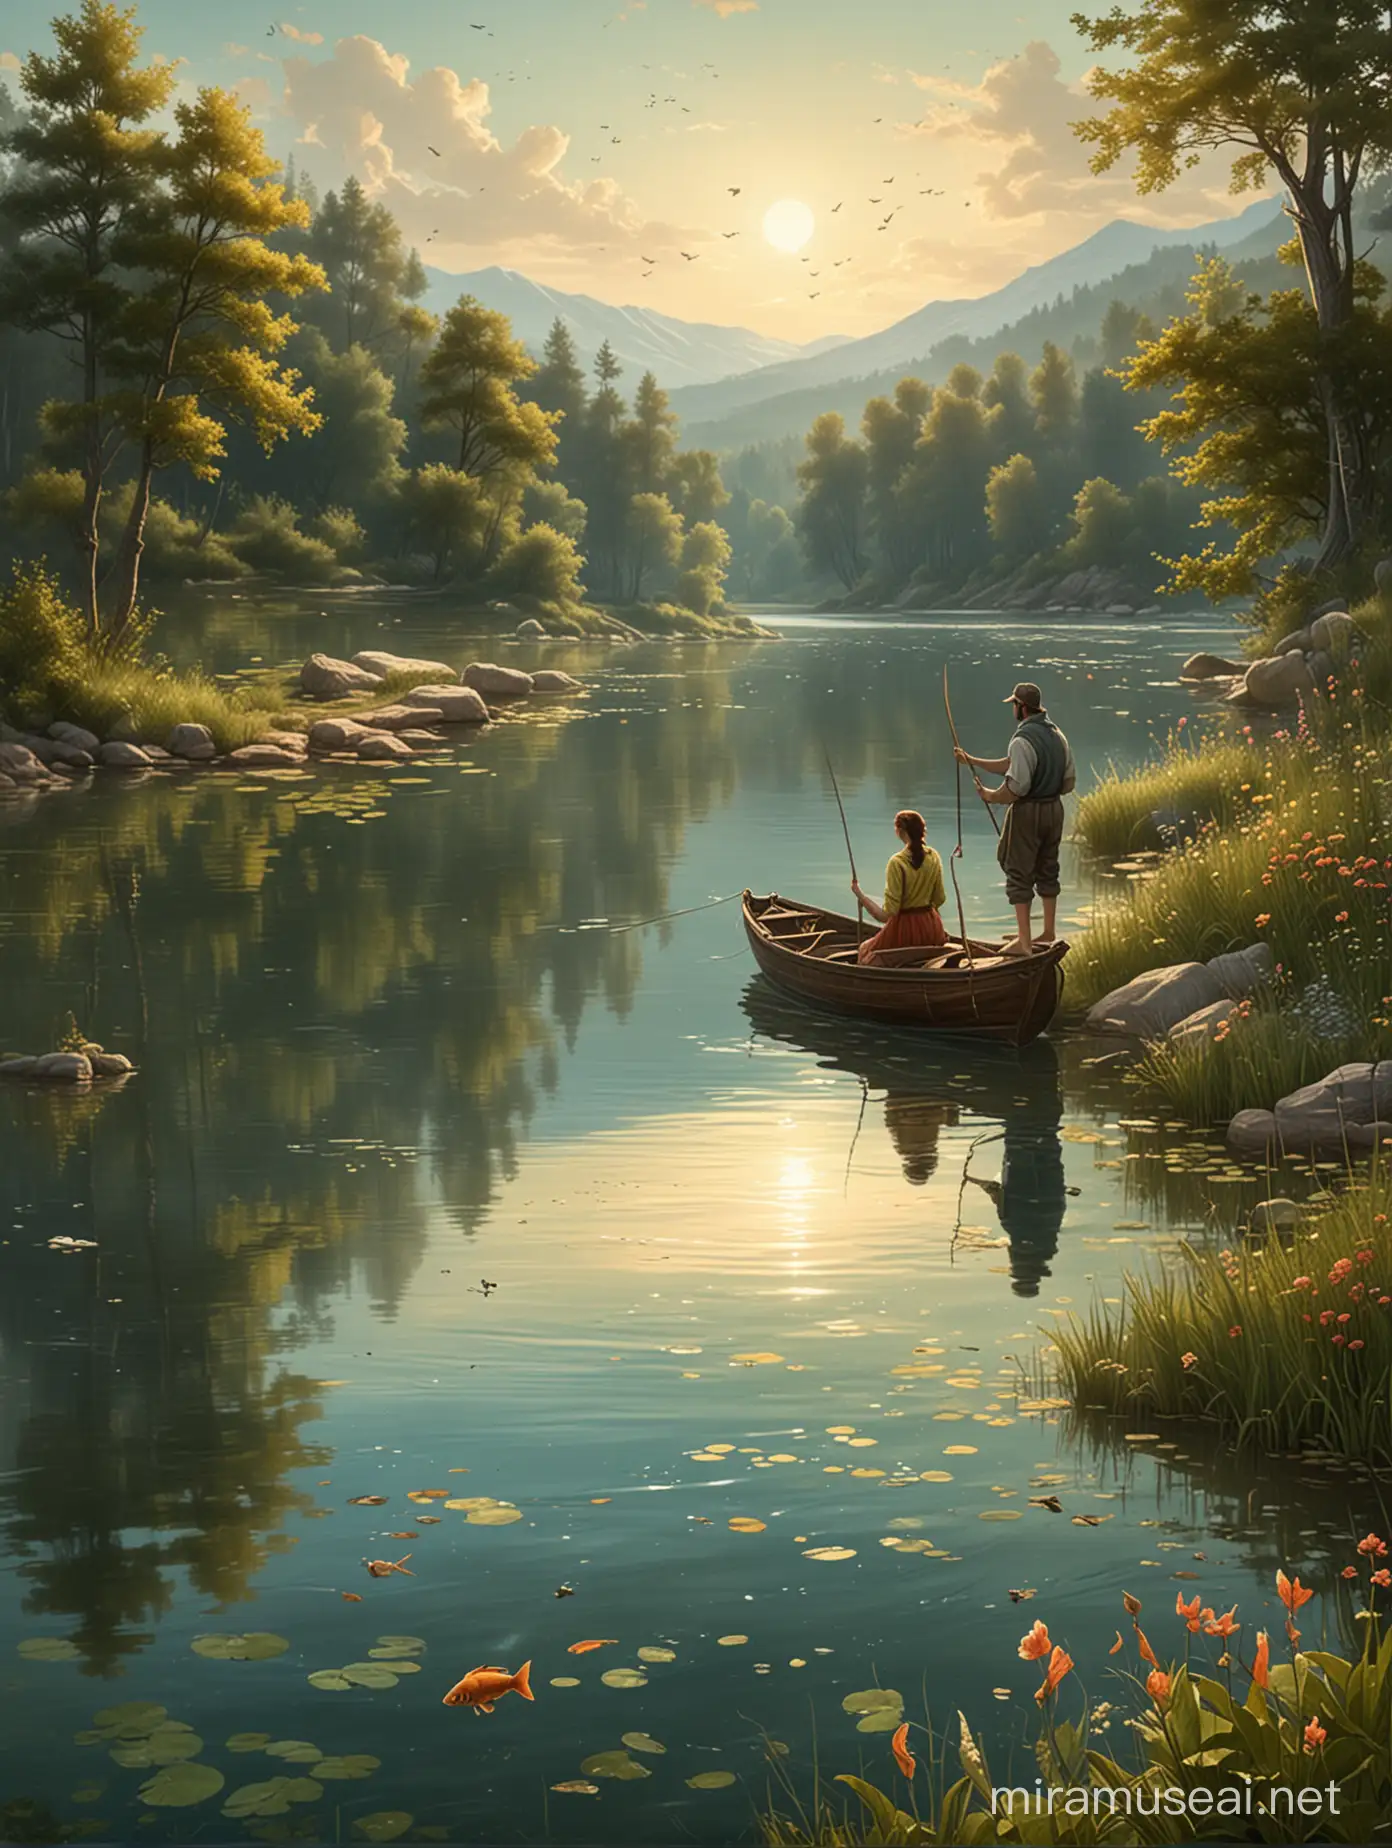 Bitte erstelle ein Hintergrundbild für ein Plakat von dem Märchen "Vom Fischer und seiner Frau". Das Bild soll im selben Stil, wie die vorherigen sein. Auf dem Bild soll ein See, der Fischer und ein Fisch zu sehen sein.